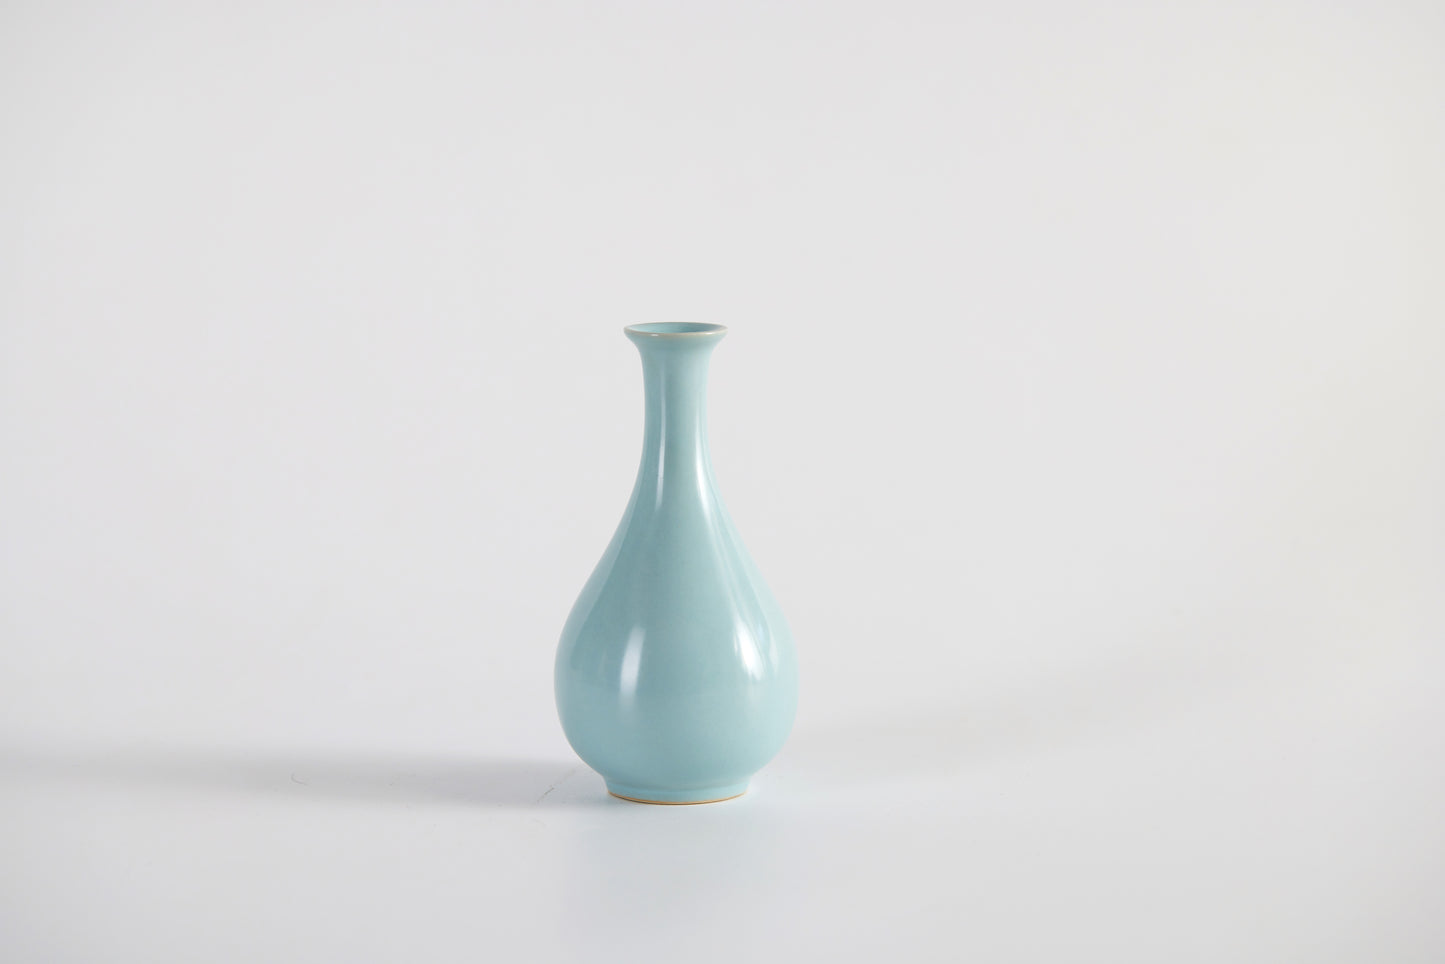 Desktop Small Flower Vase